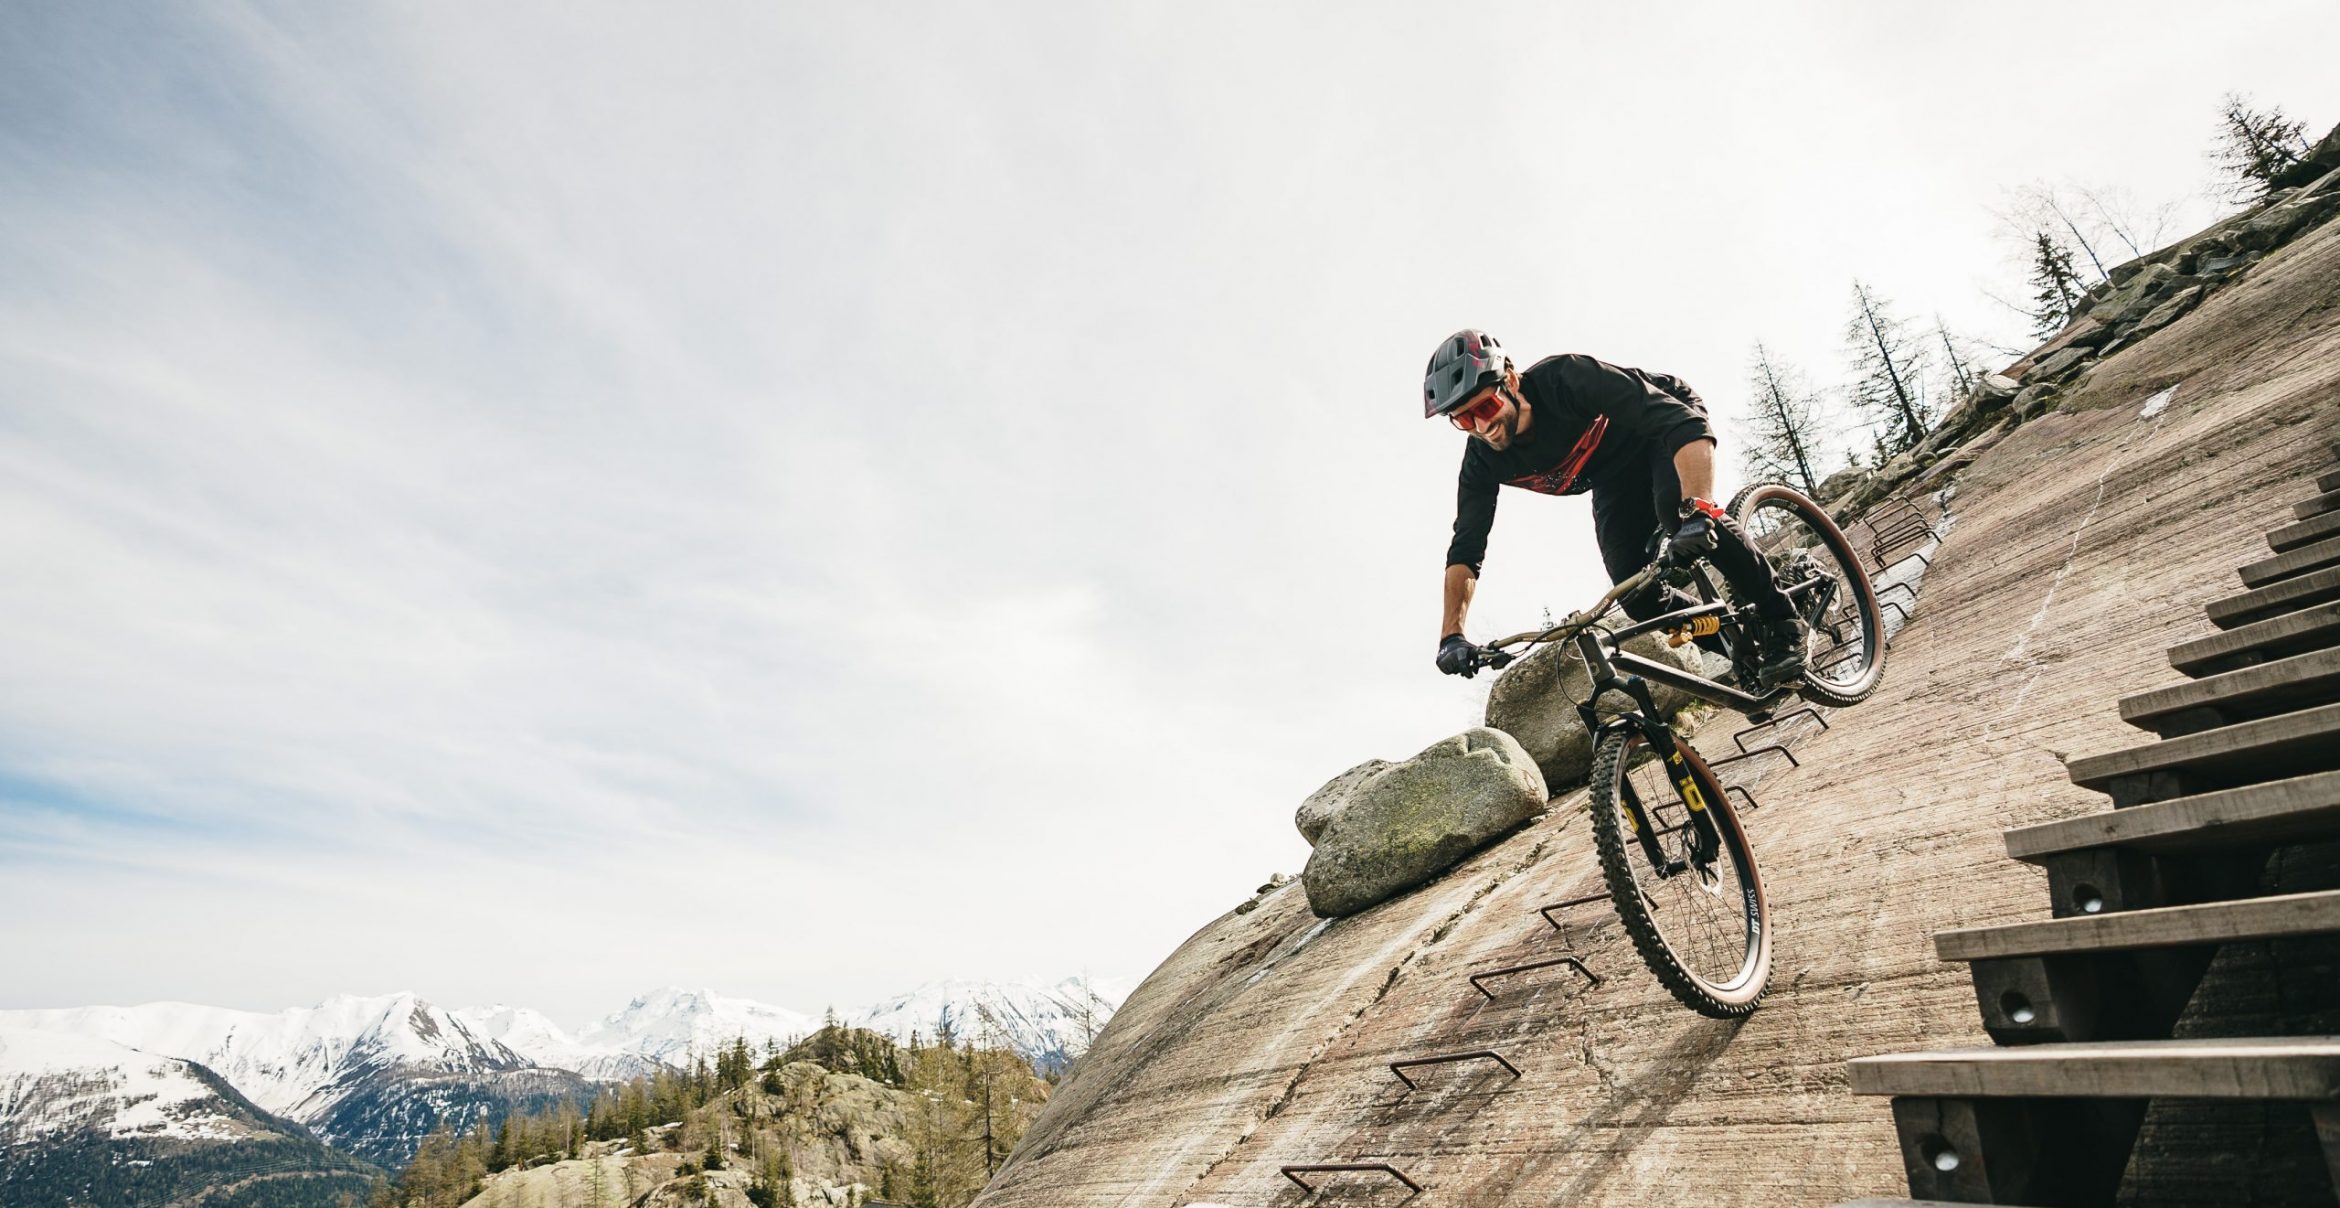 „Wen nur Adrenalin treibt, der ist am Ende“ – Biker Kilian Bron im Interview